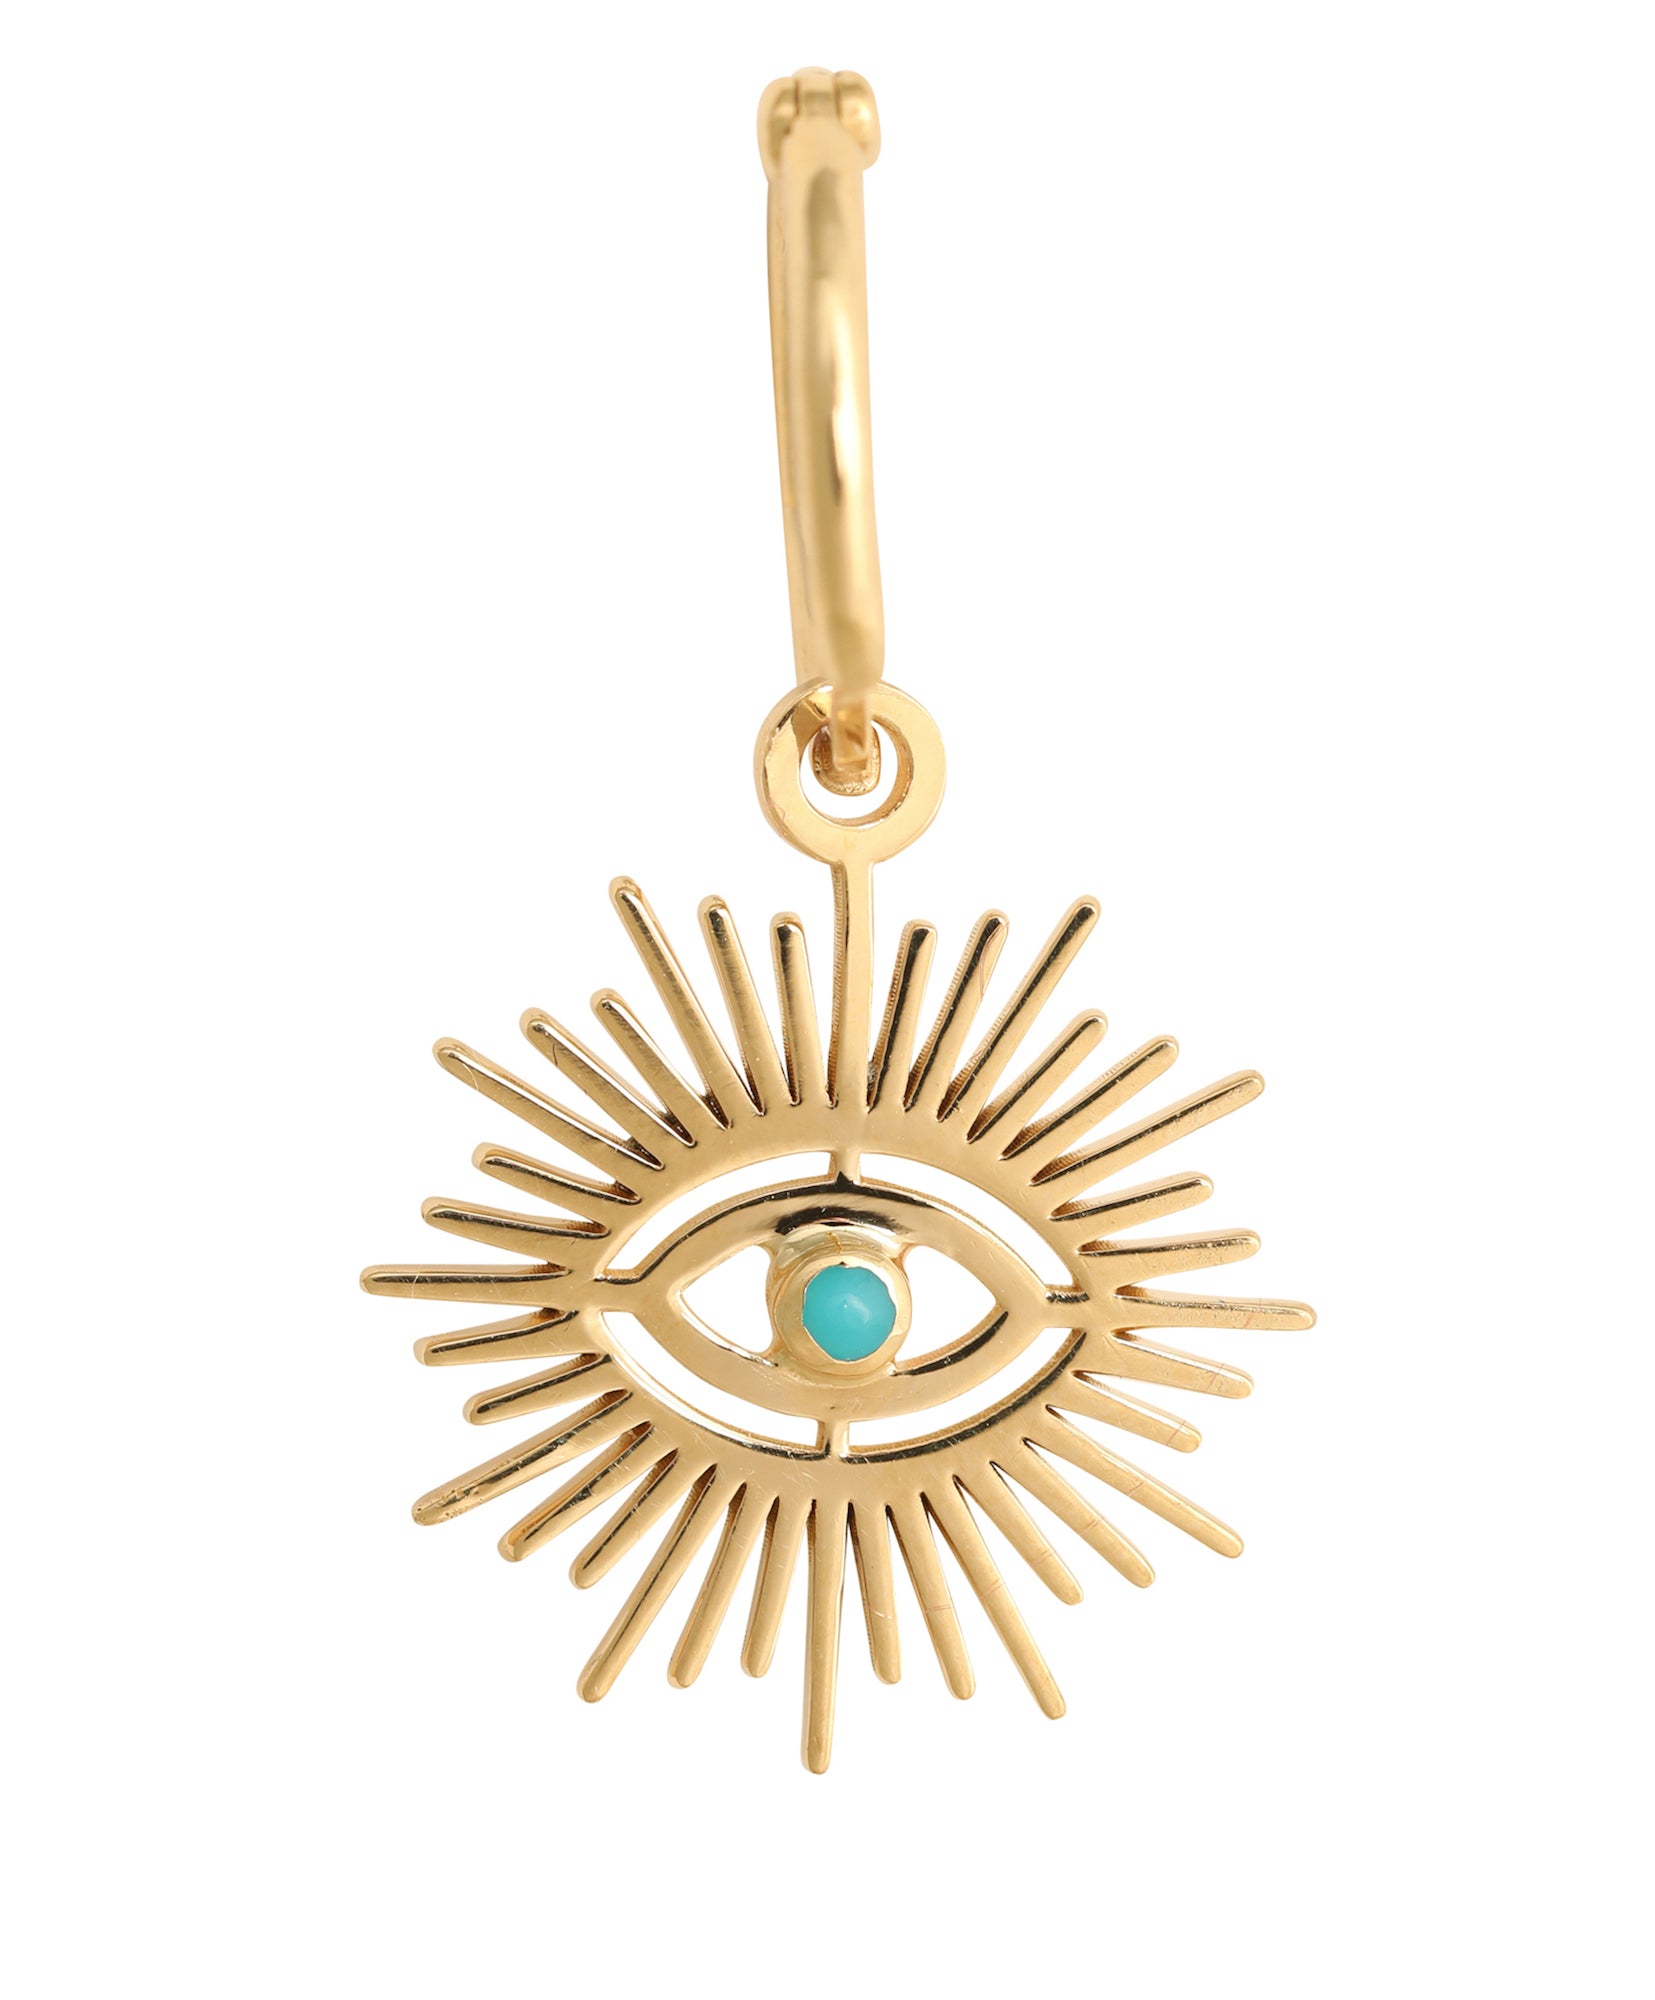 J by boghossian, gold, earrings, hoop, evil eye, eye, turquoise